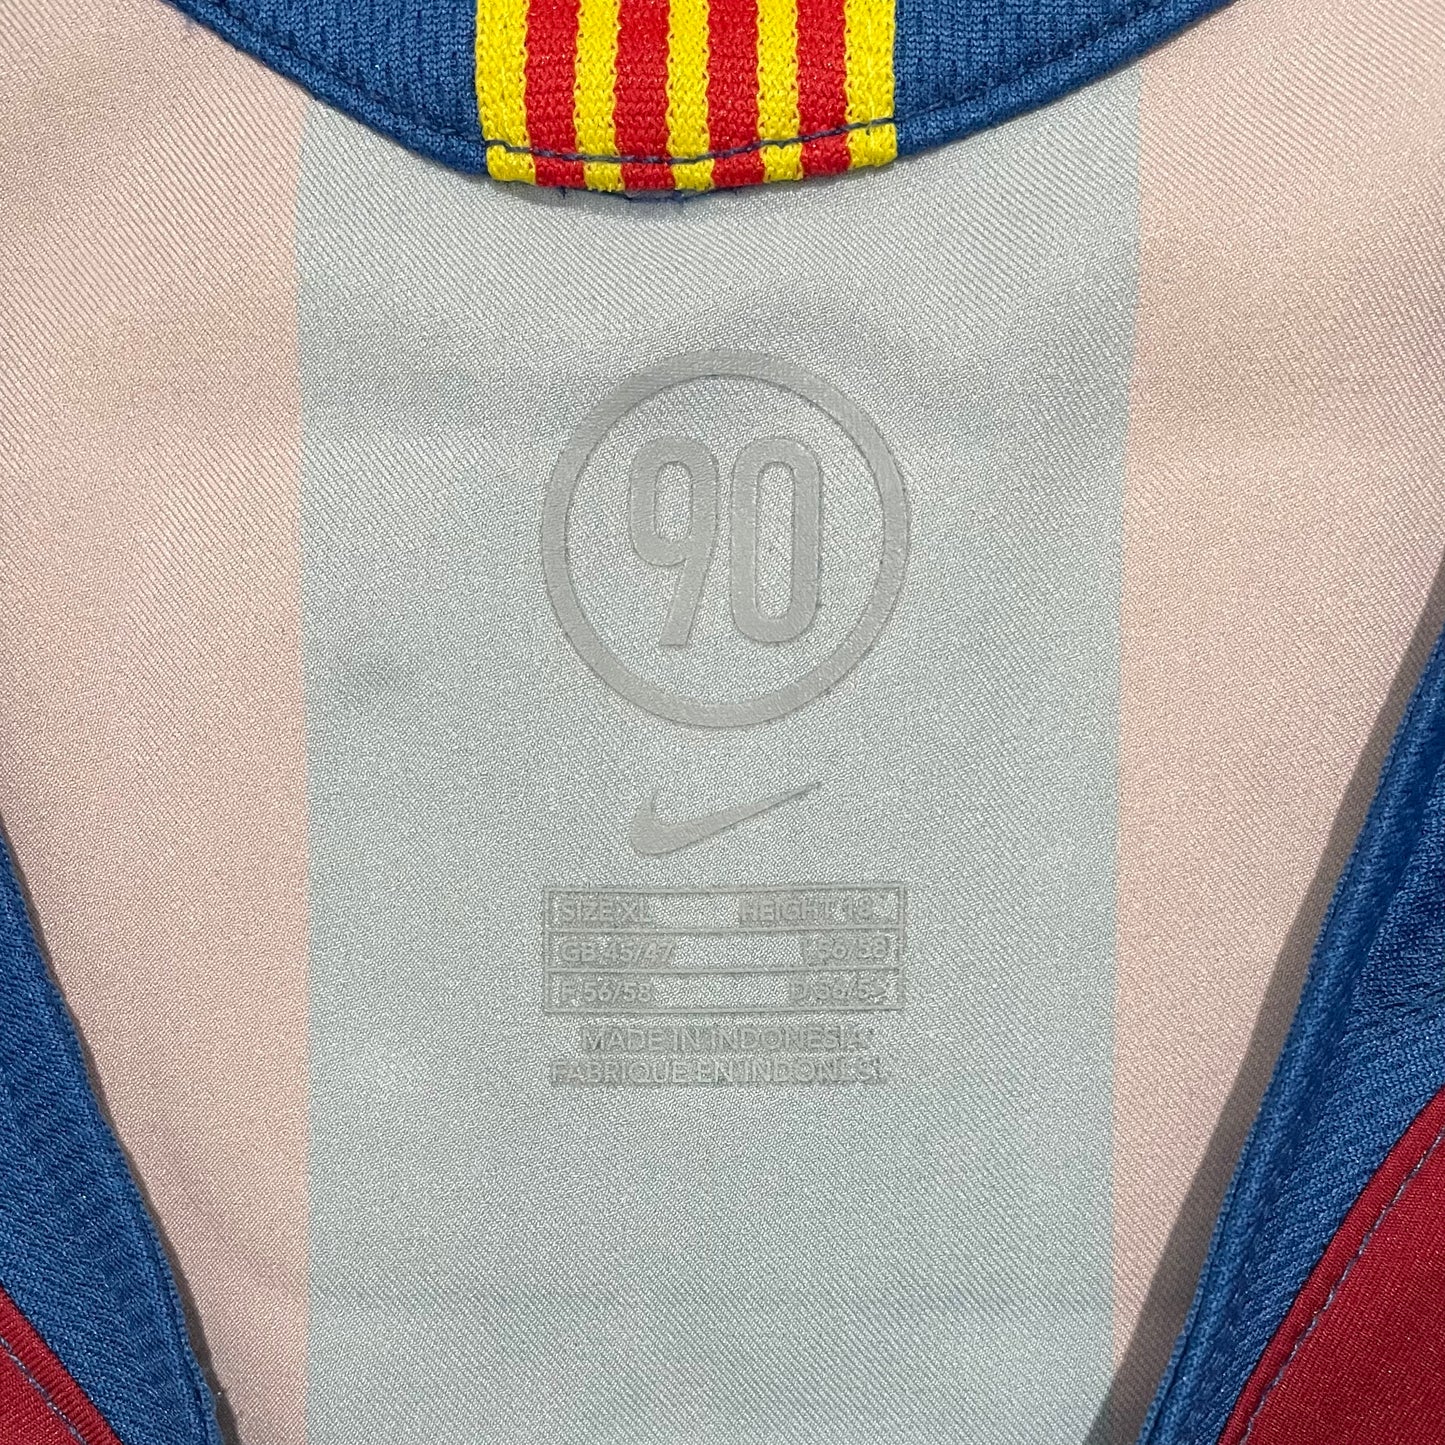 2005-2006 FC Barcelona home shirt #10 Ronaldinho (XL)